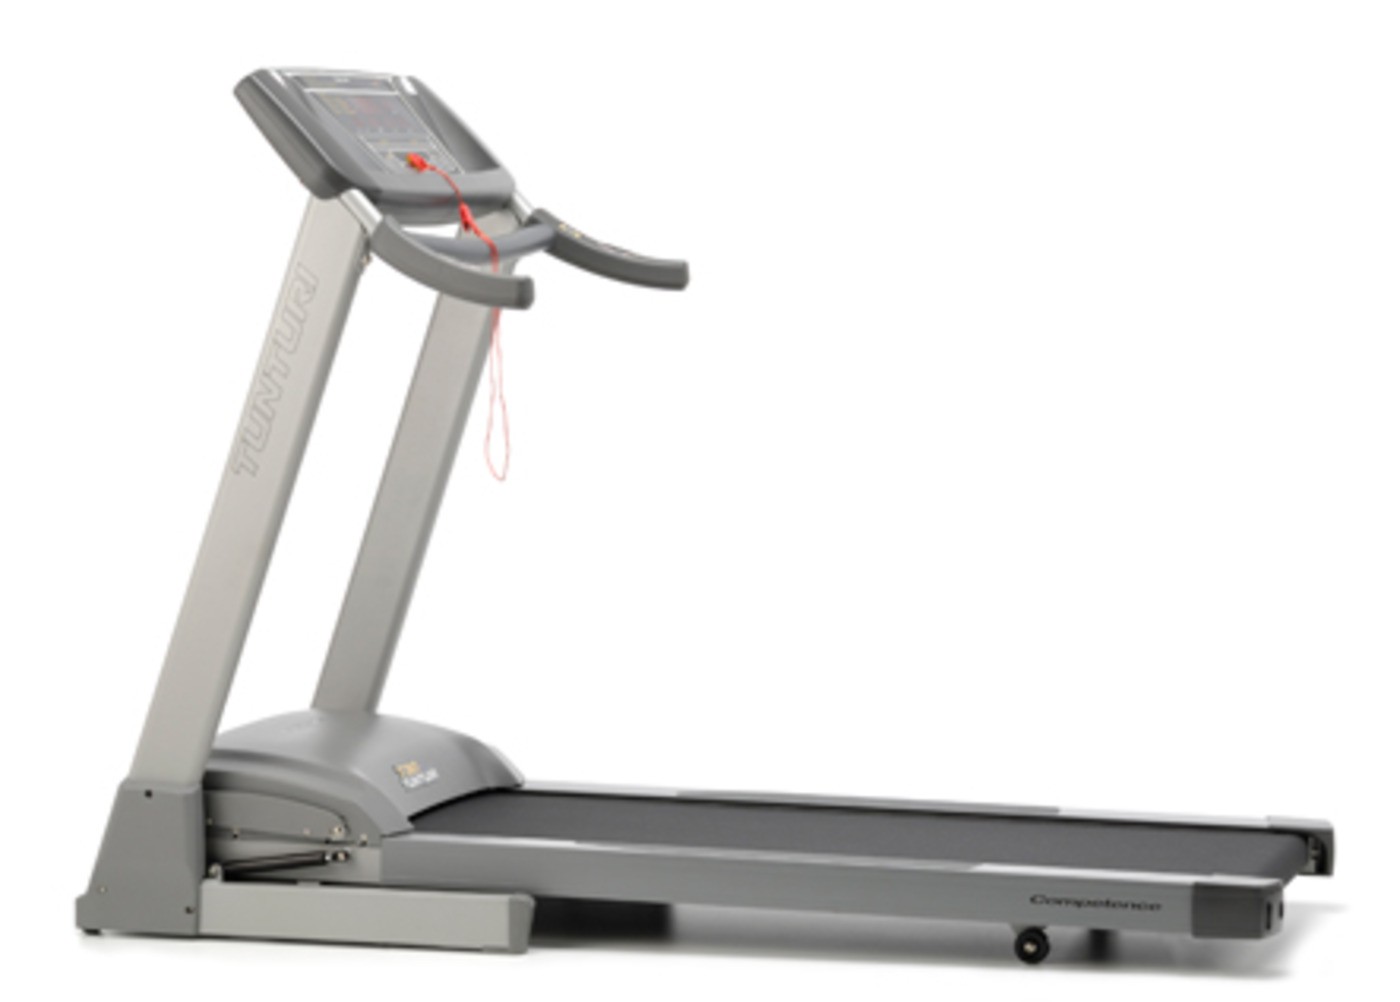 T30 Treadmill - Ex Display